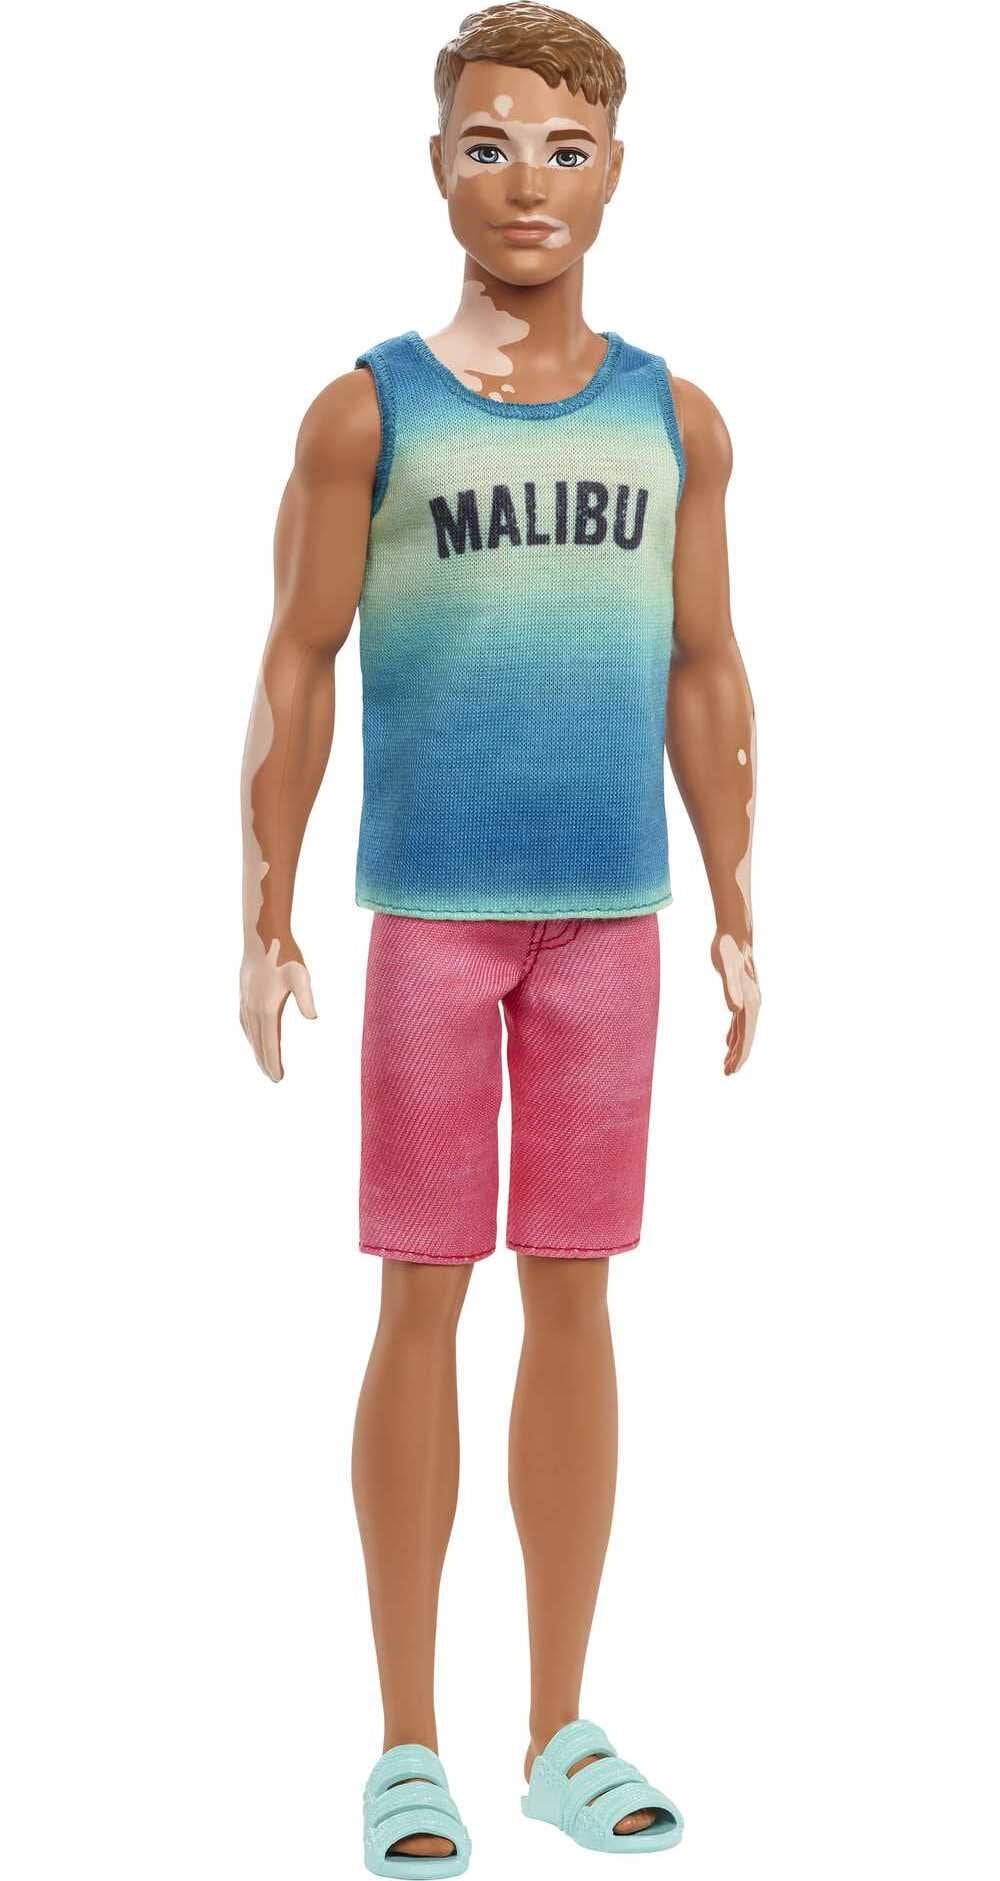 Vermindering Optimistisch raket Barbie Fashionistas Ken Fashion Doll #192 in Malibu Tank & Sandals with  Vitiligo & Brunette Hair - Walmart.com